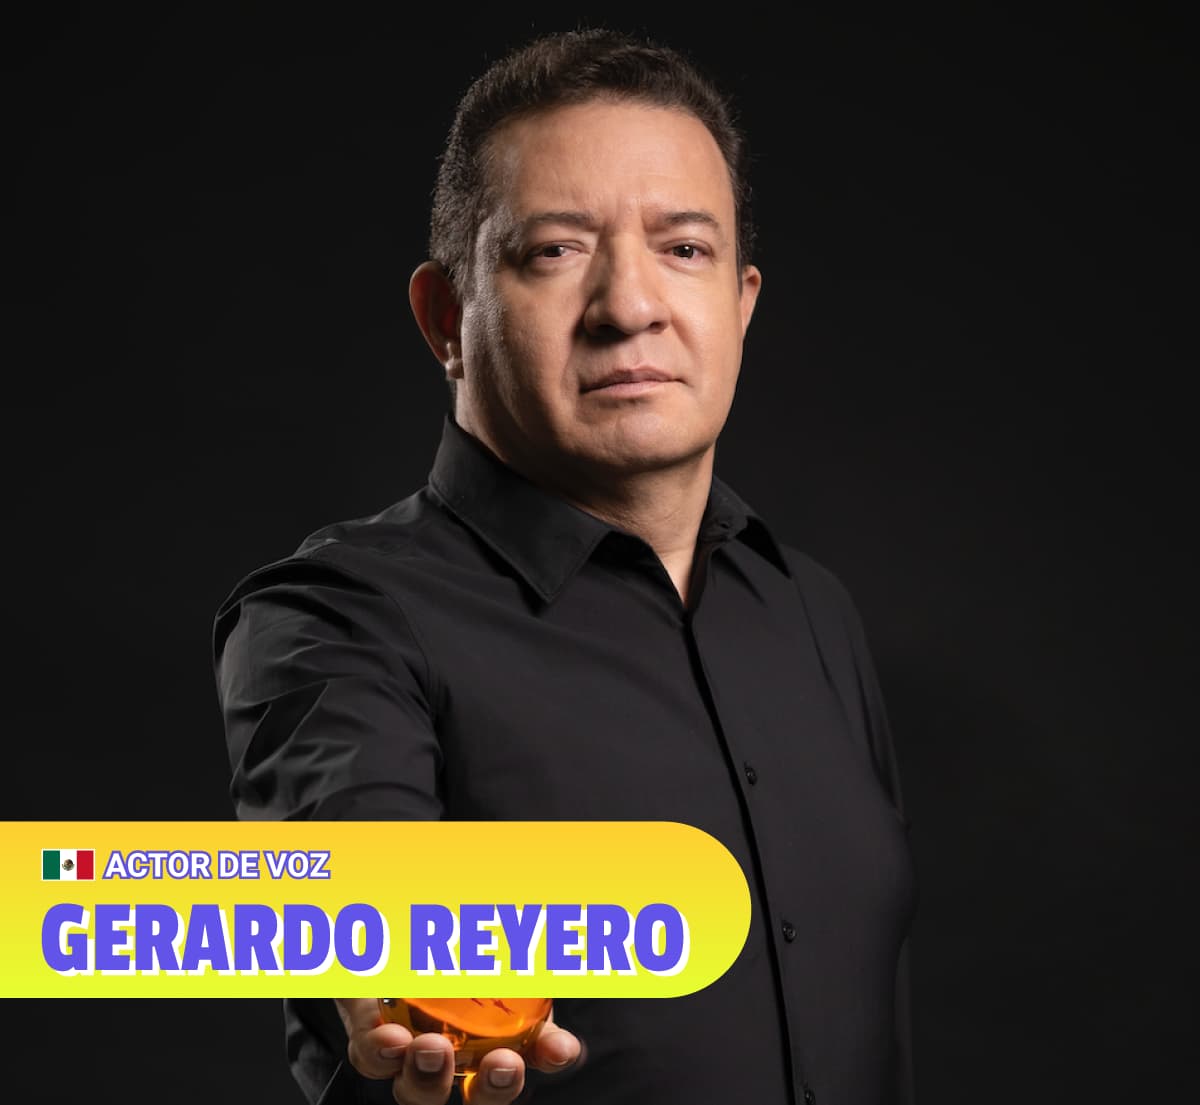 Gerardo Reyero - Actor de Voz